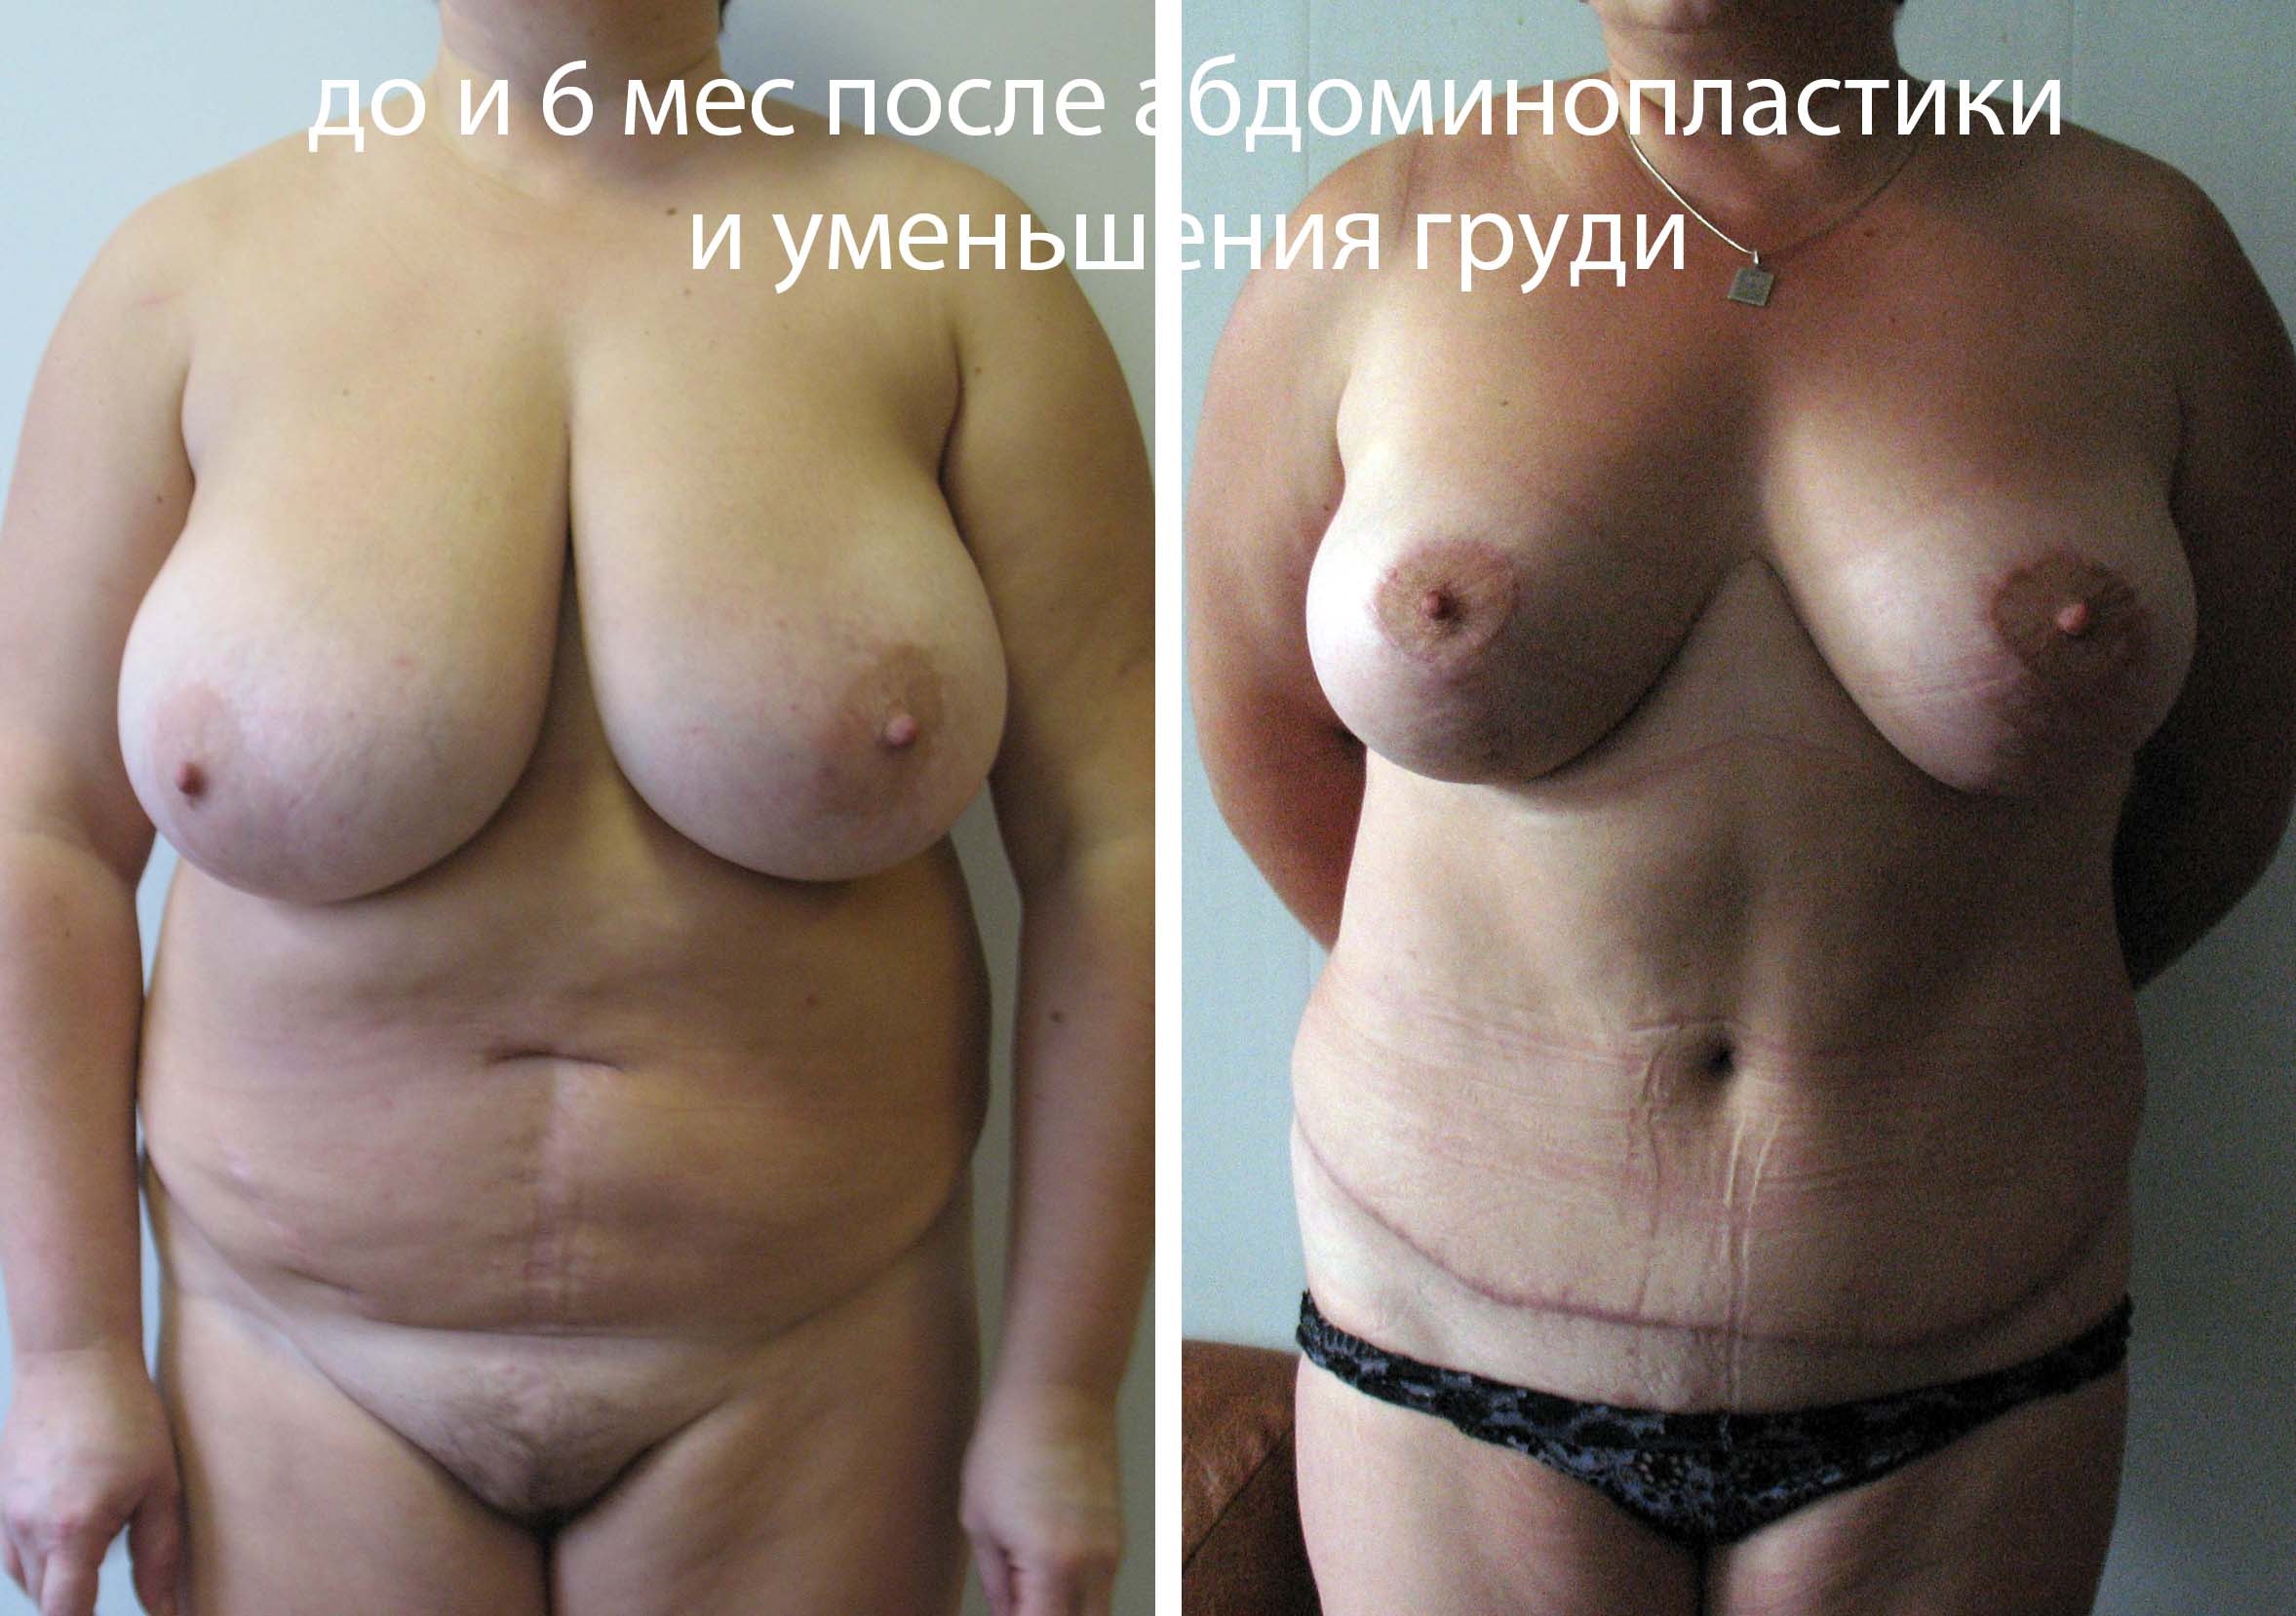 уменьшение груди у женщин в домашних условиях фото 22